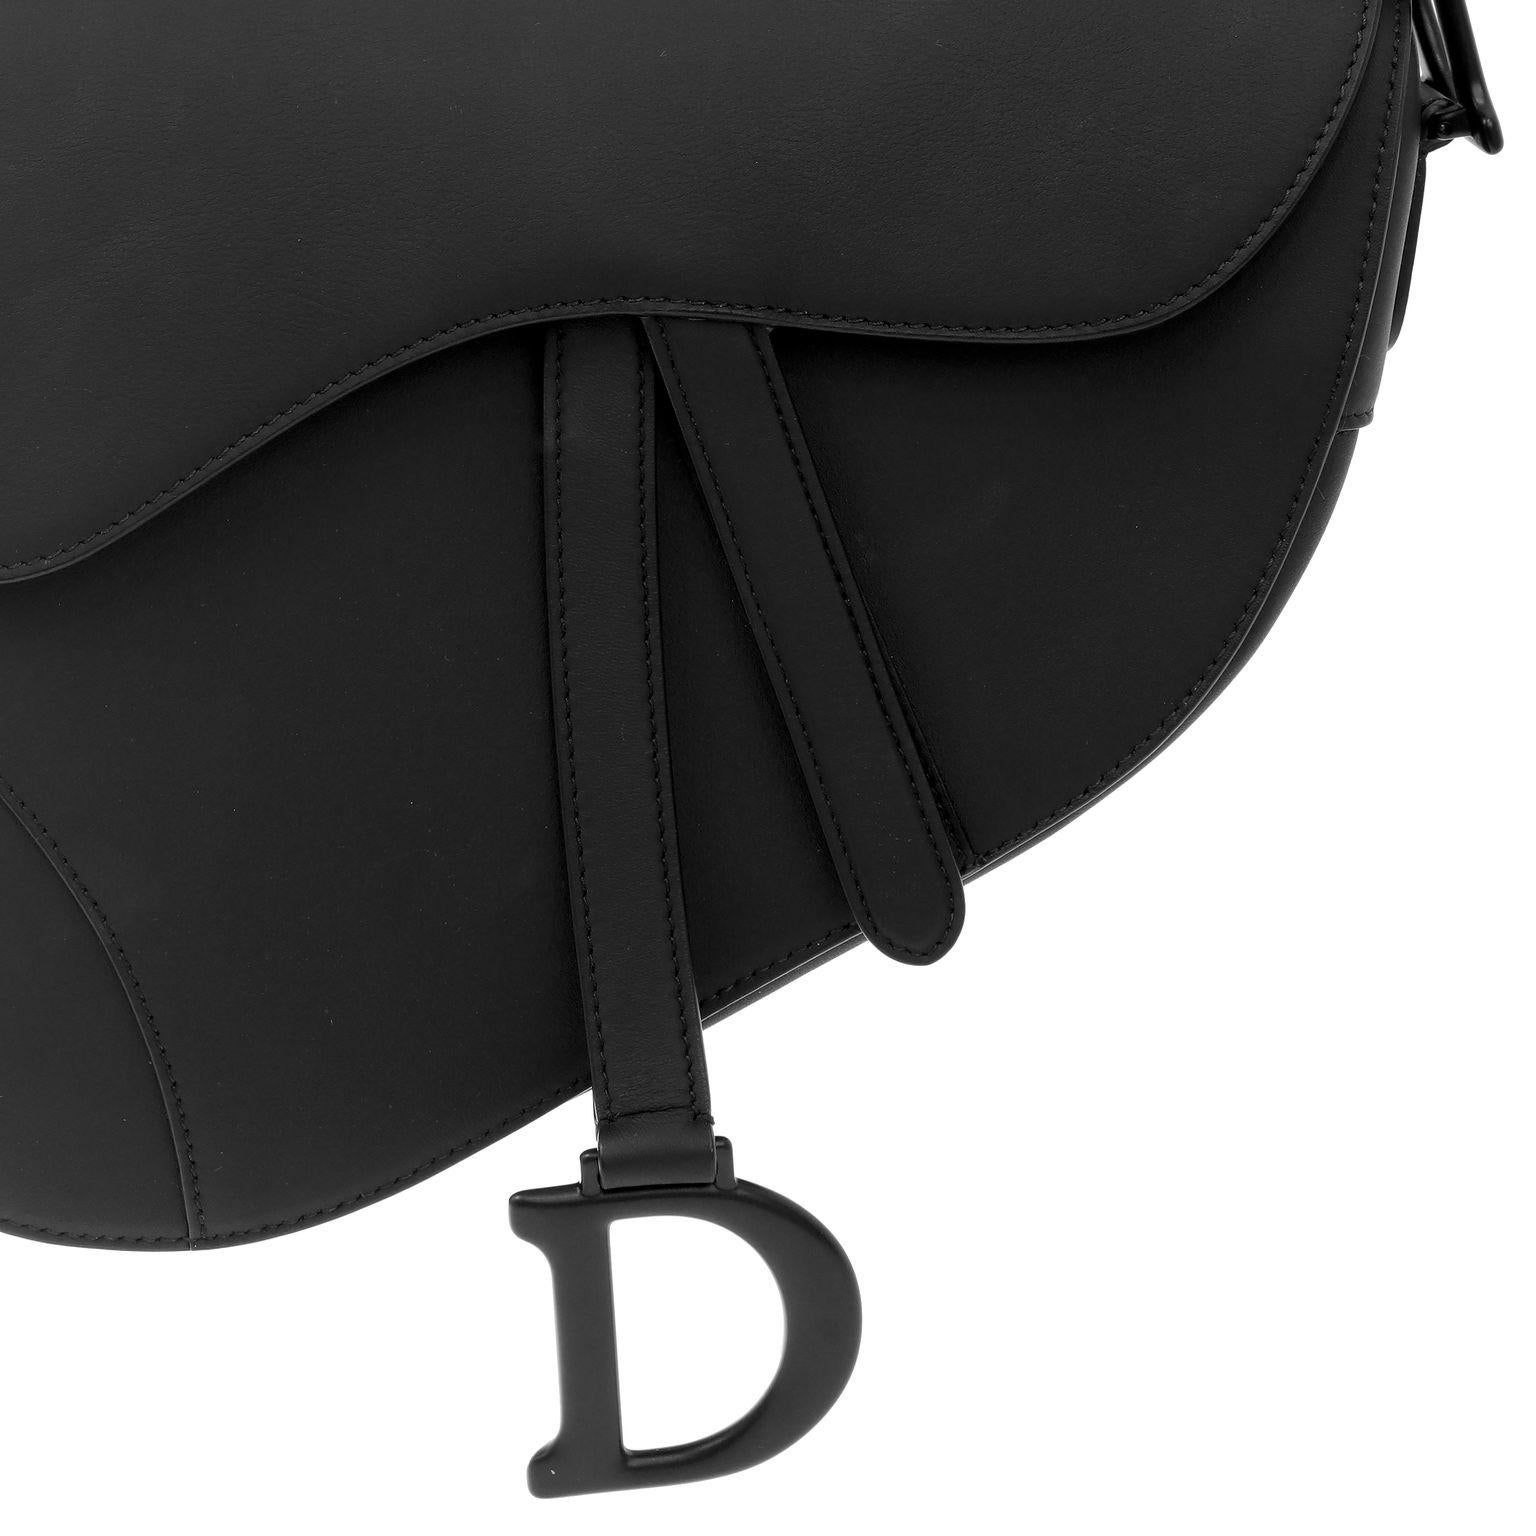 Diese authentische Christian Dior So Black Leather Saddle Bag ist tadellos.  Das kultige Design ist zeitlos in schwarzem Leder mit mattschwarzer Hardware.  Inklusive Staubbeutel. 


ACO 13688